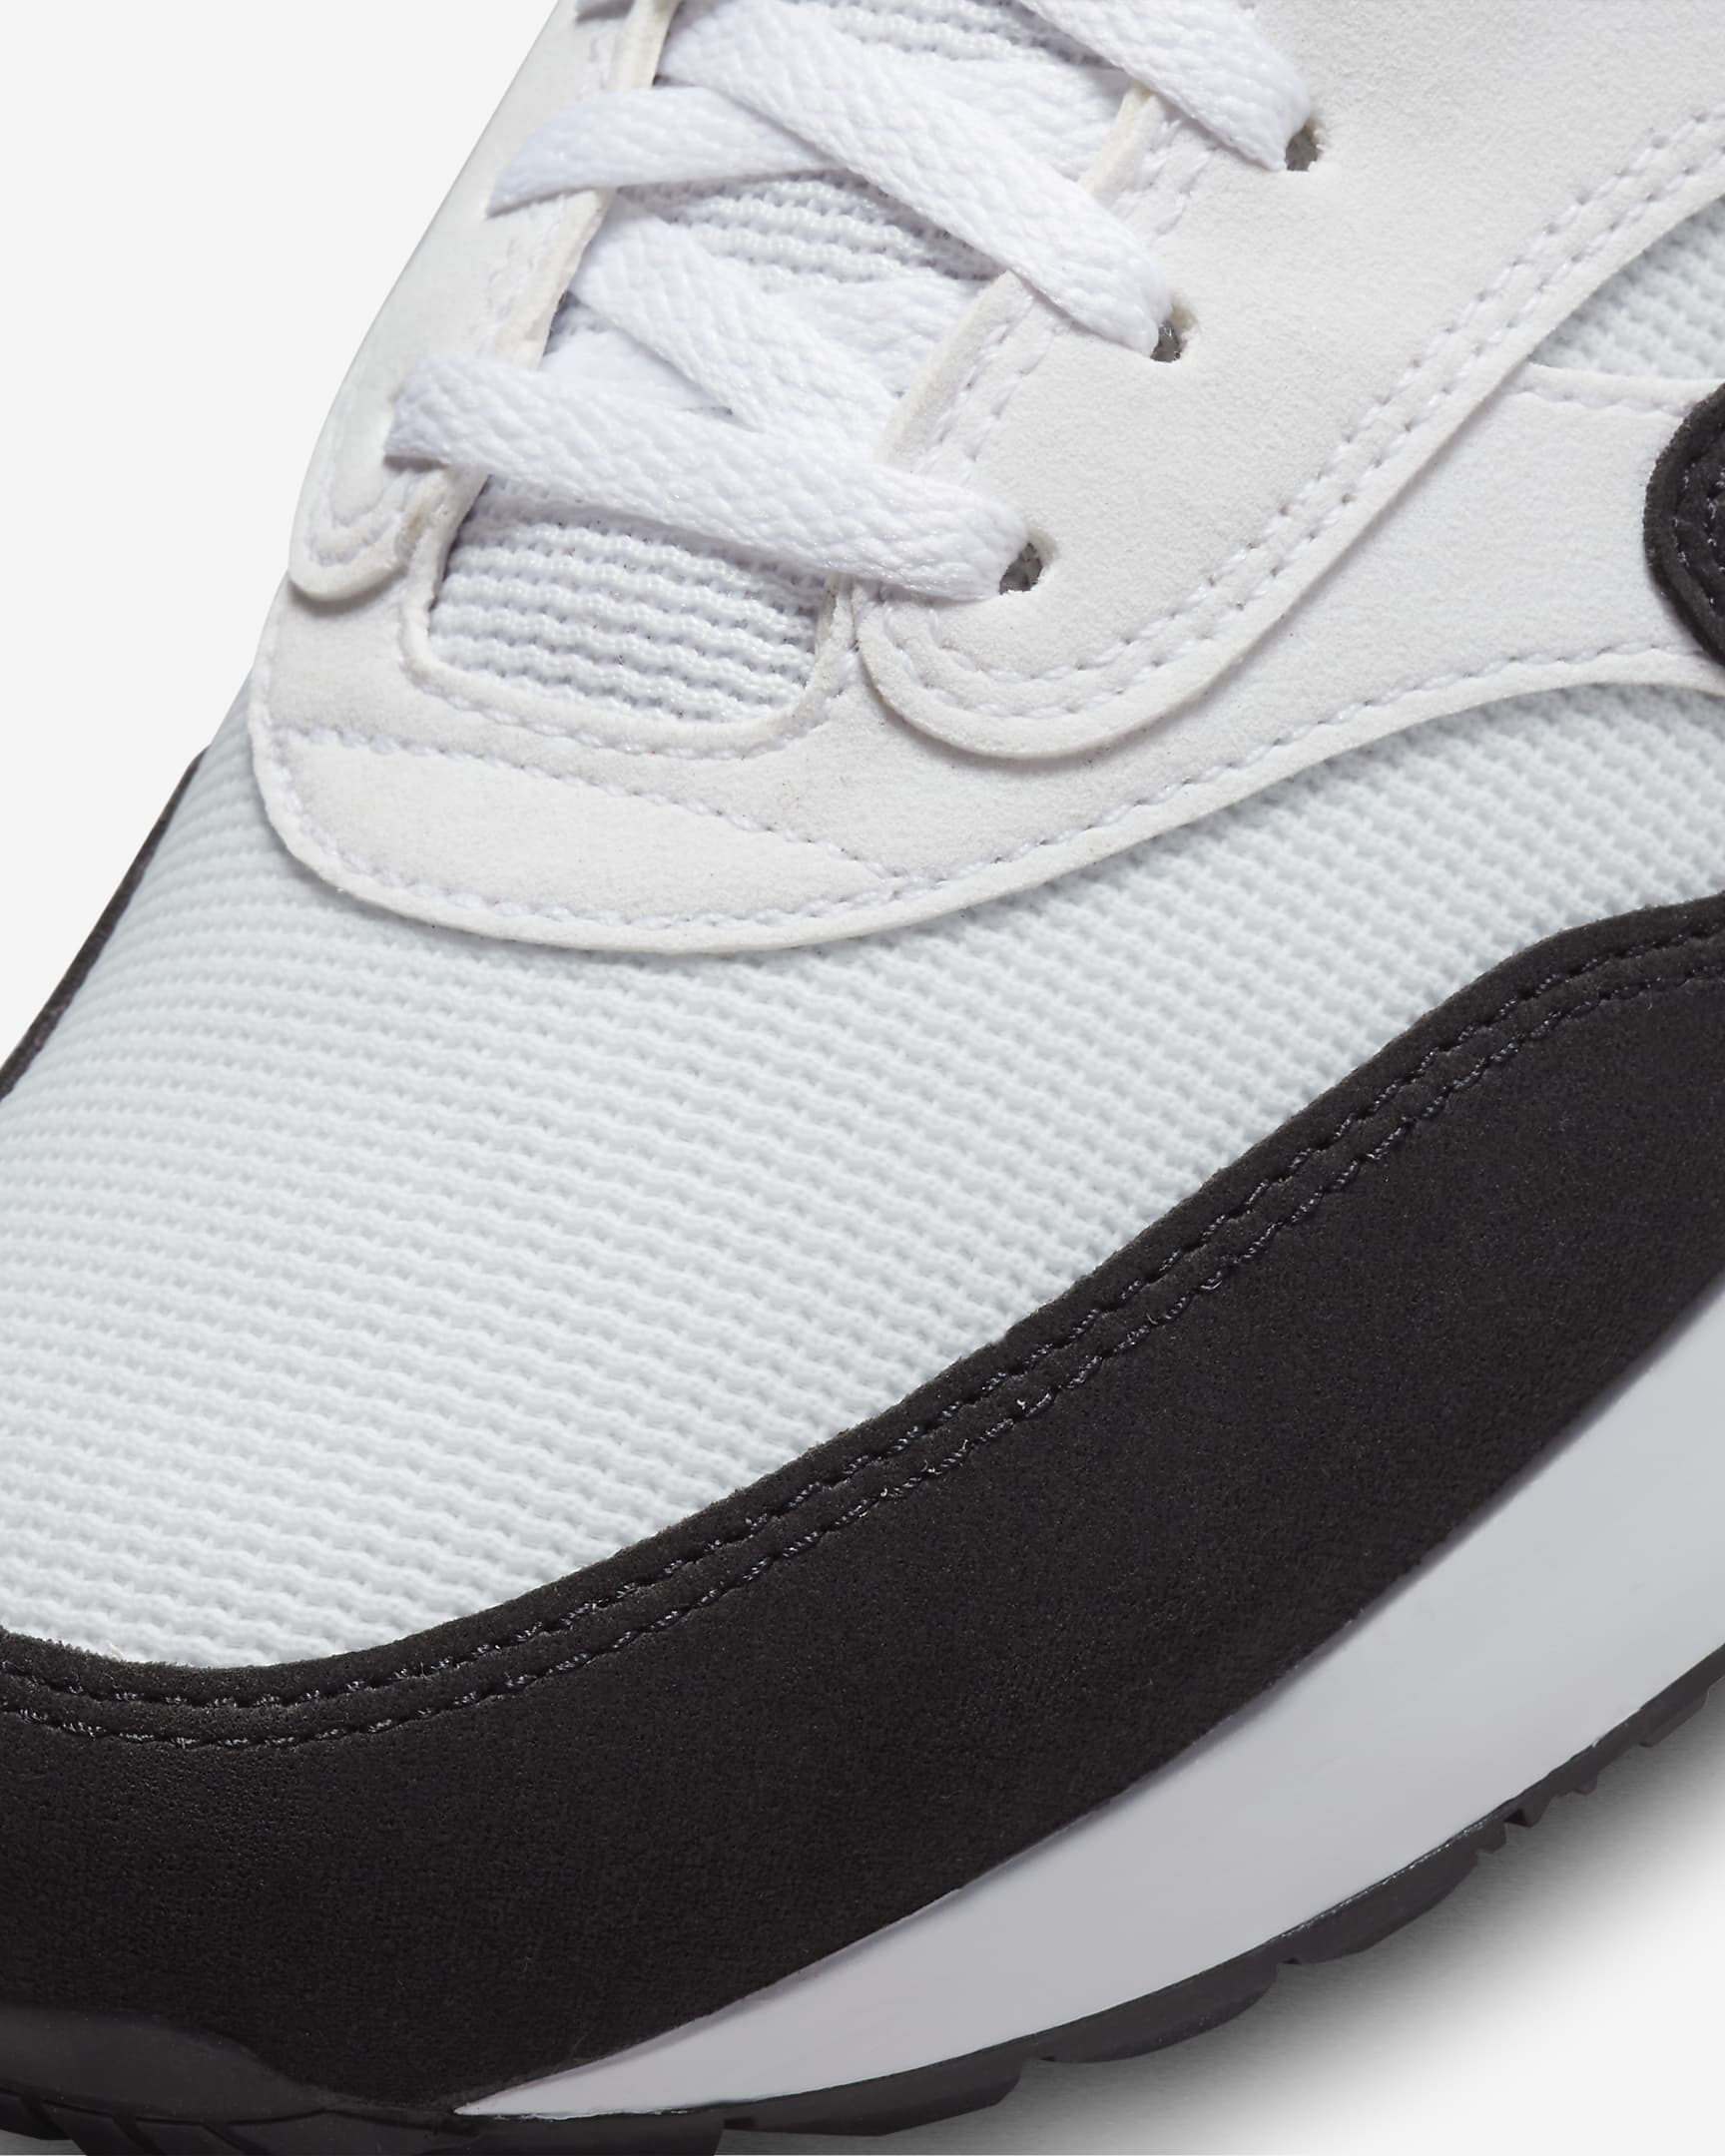 Nike Air Max 1 '86 OG G Men's Golf Shoes - White/Black